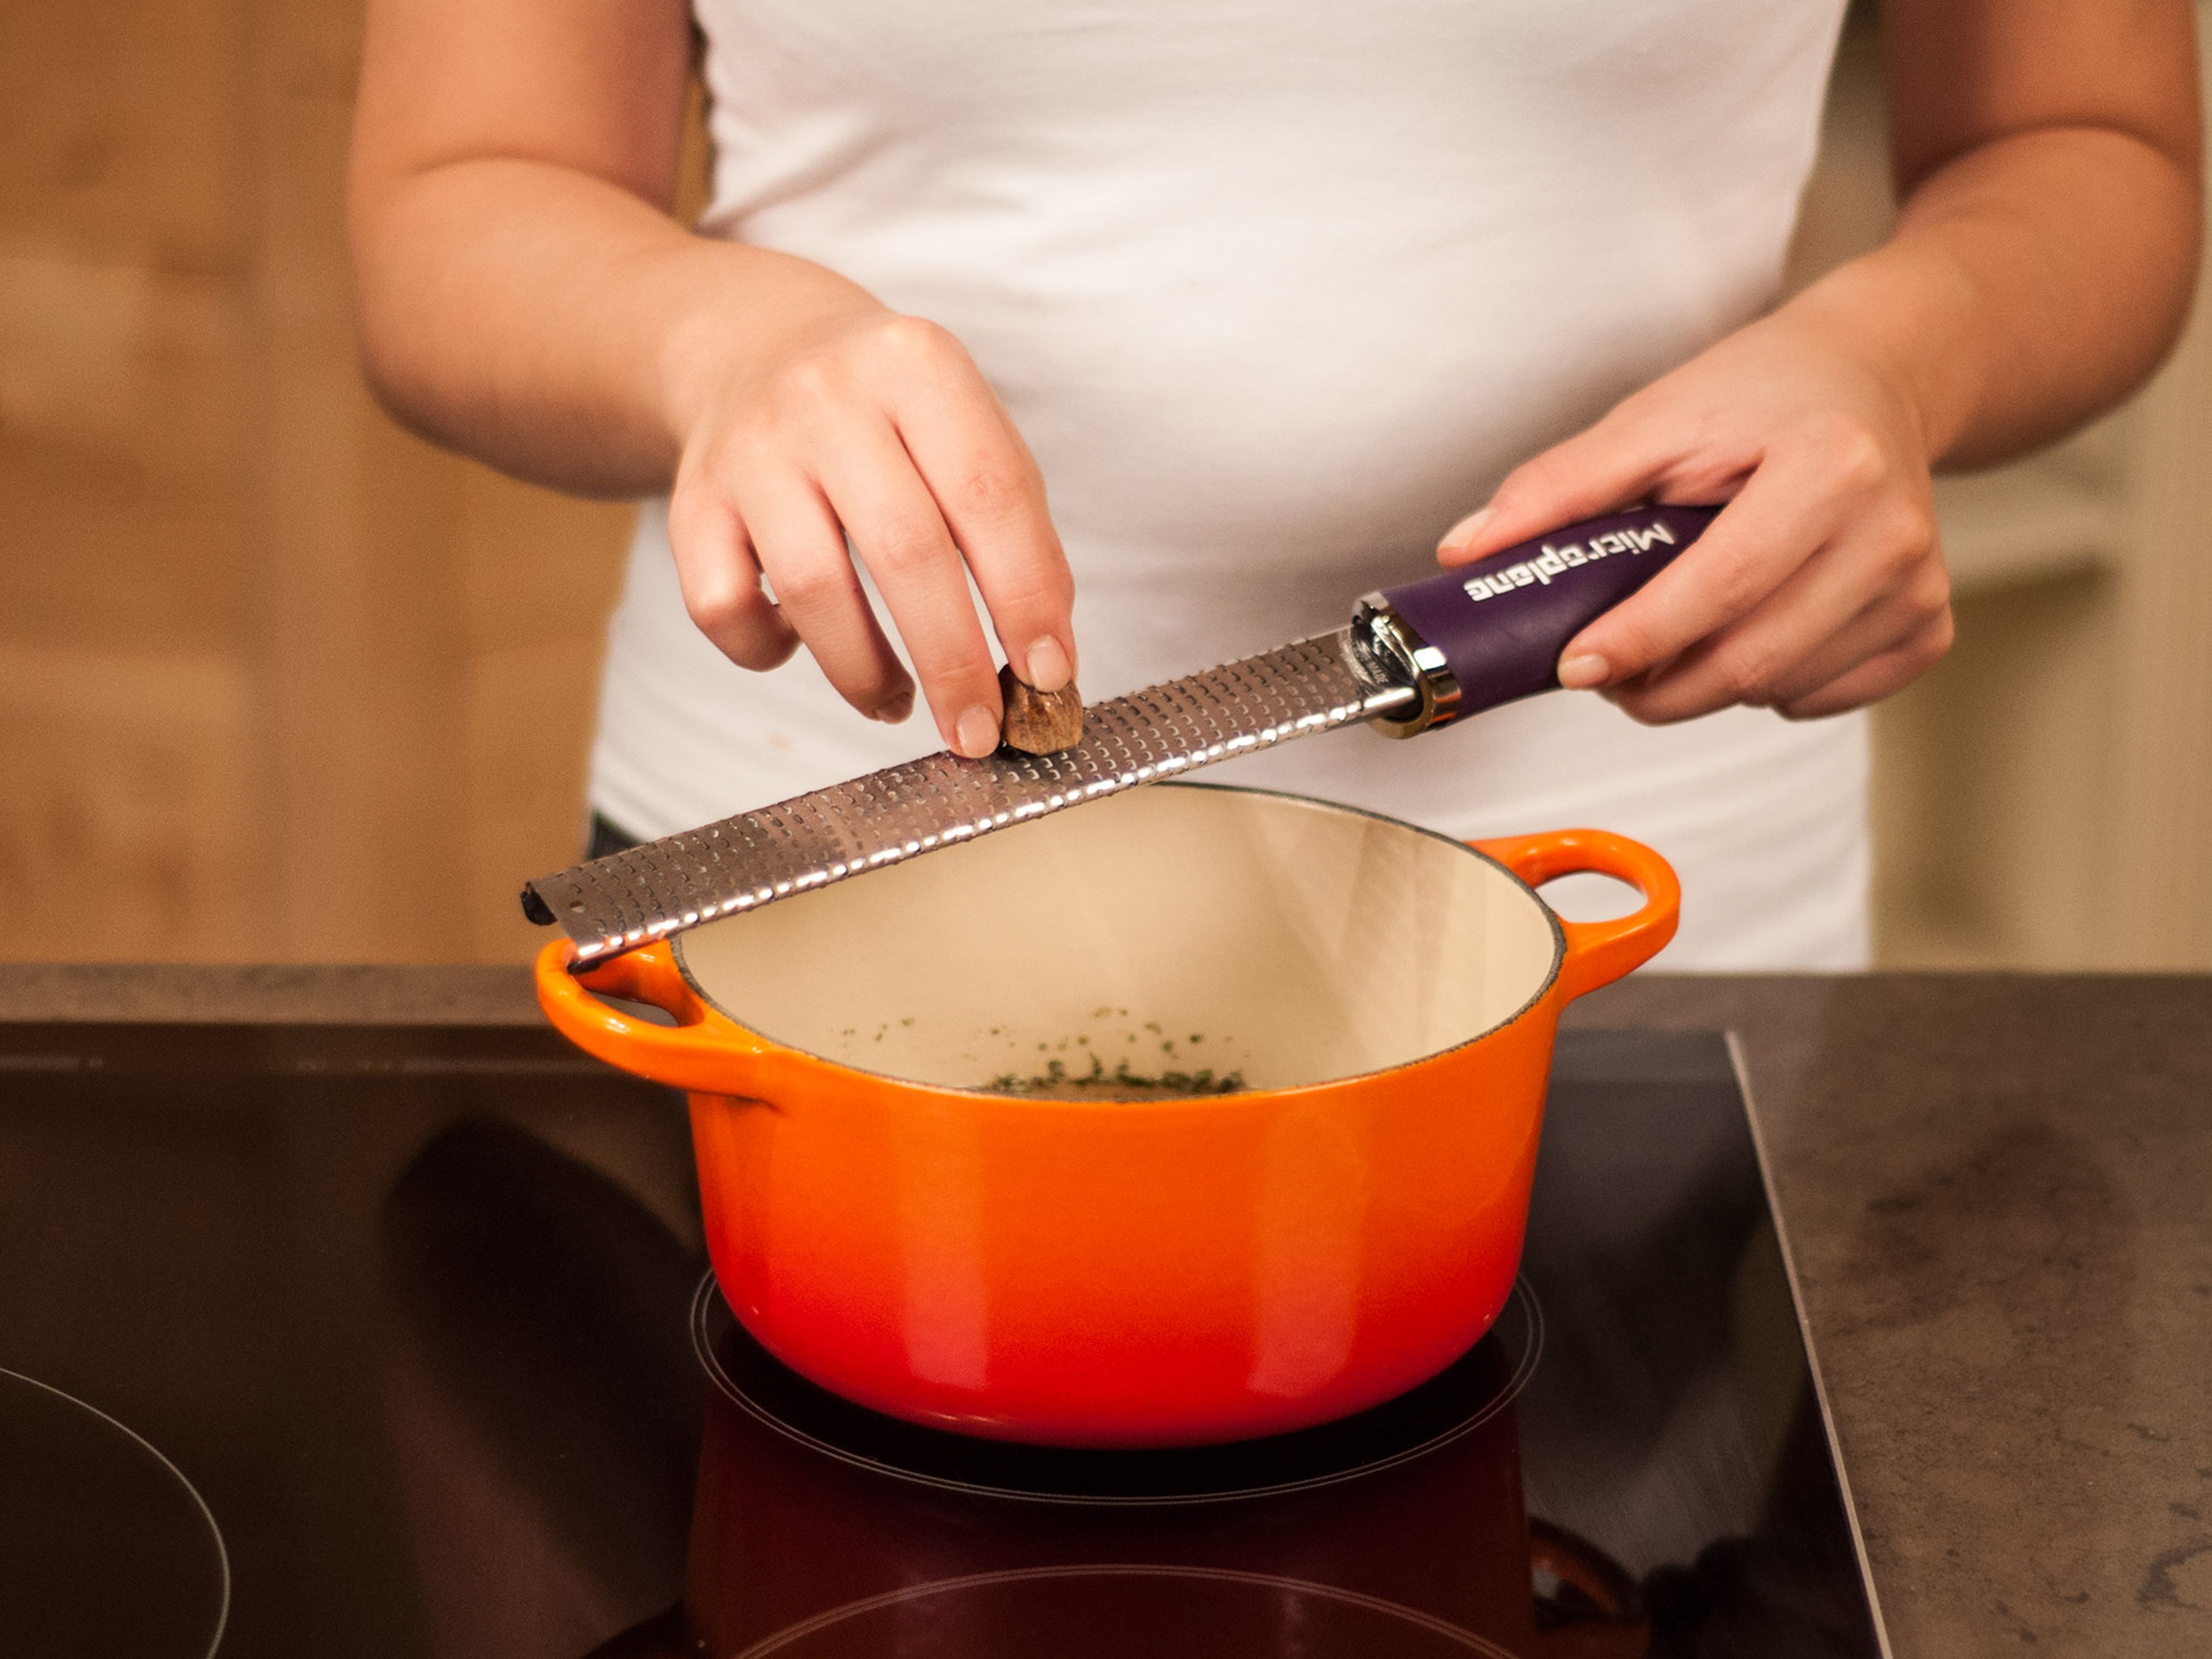 Hühnerbrühe und Rosmarinblätter in einen Topf geben, bei mittlerer Hitze erwärmen und mit Salz und Pfeffer abschmecken. Muskatnuss hineinreiben und aufkochen.